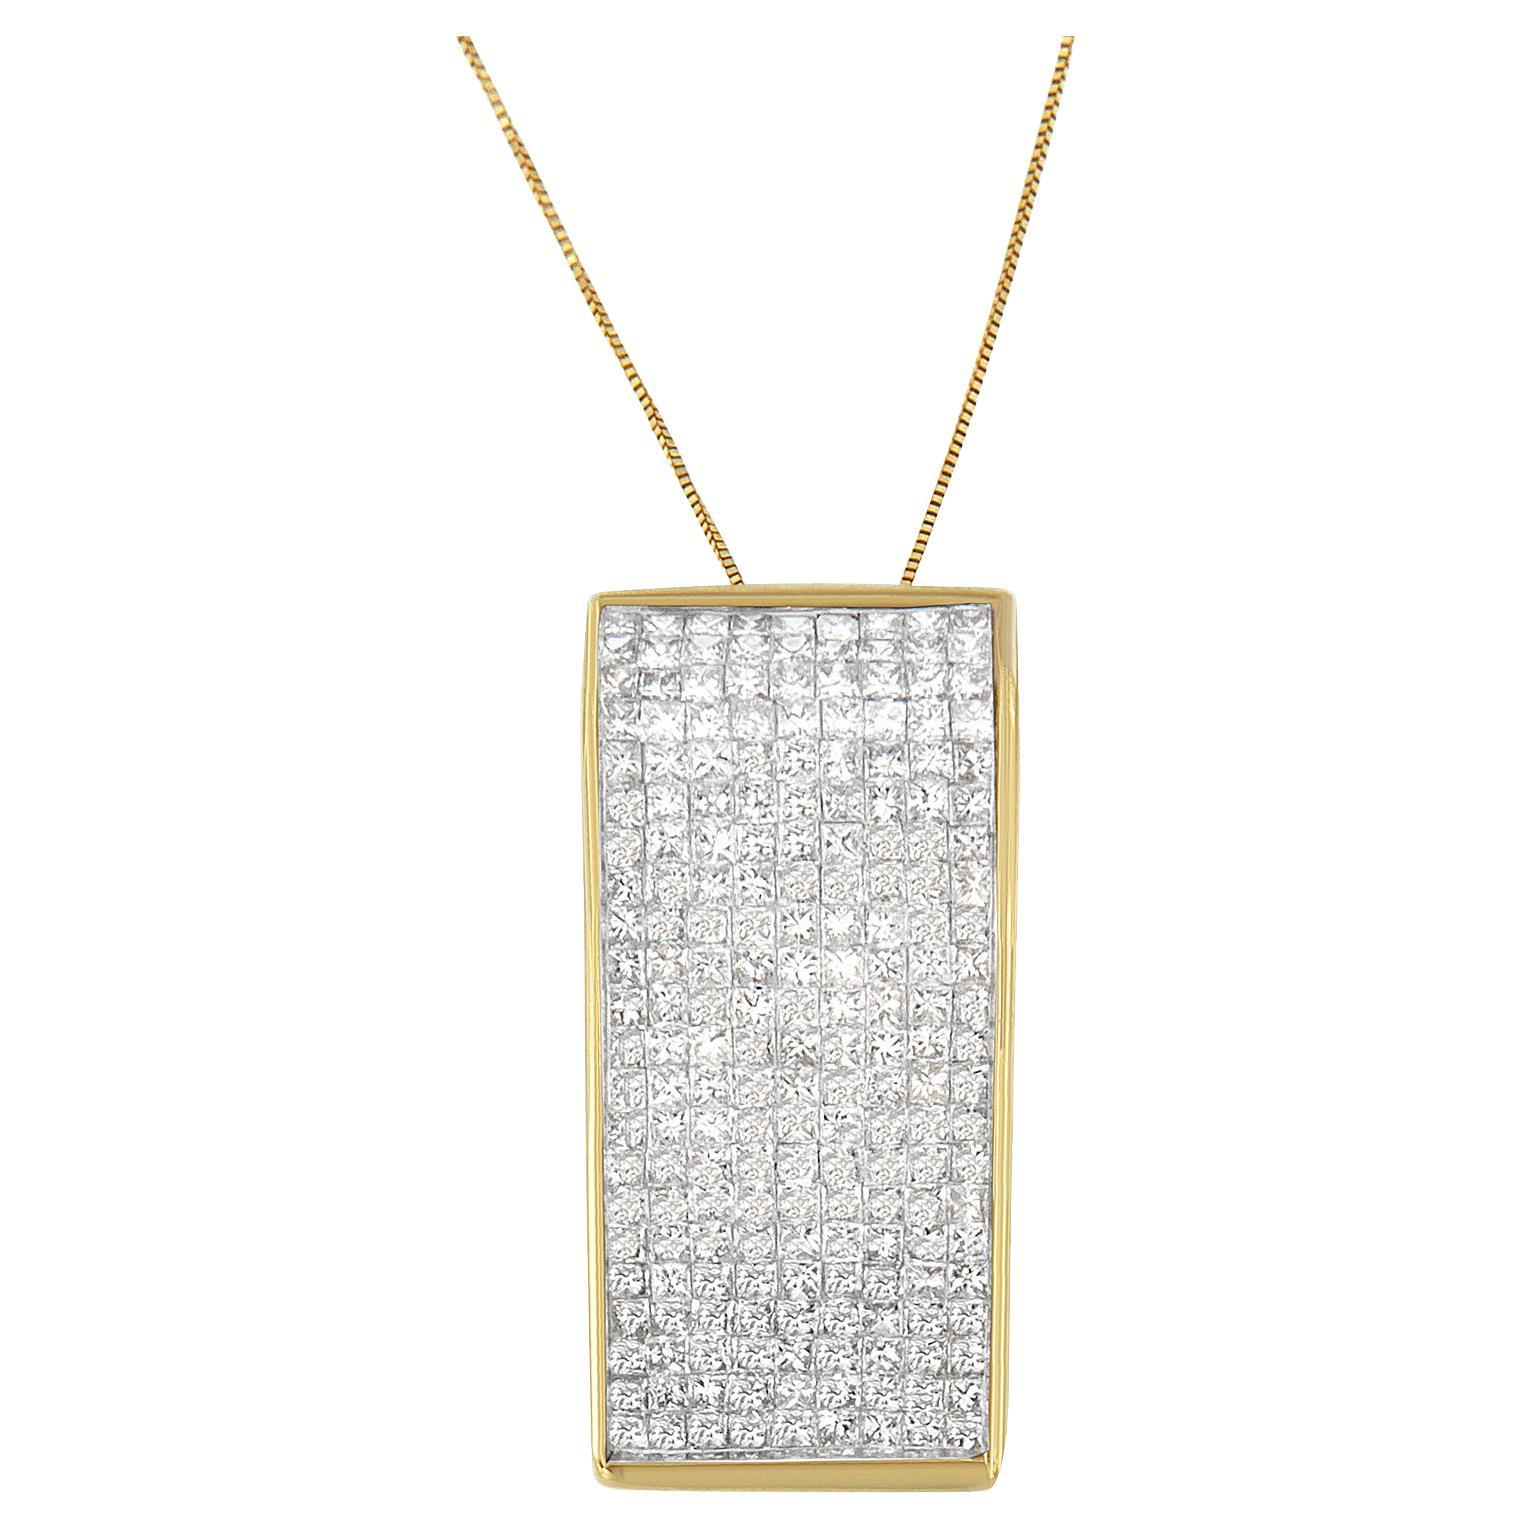 14K Yellow Gold 2 5/8 Carat Princess Cut Diamond Block Pendant Necklace